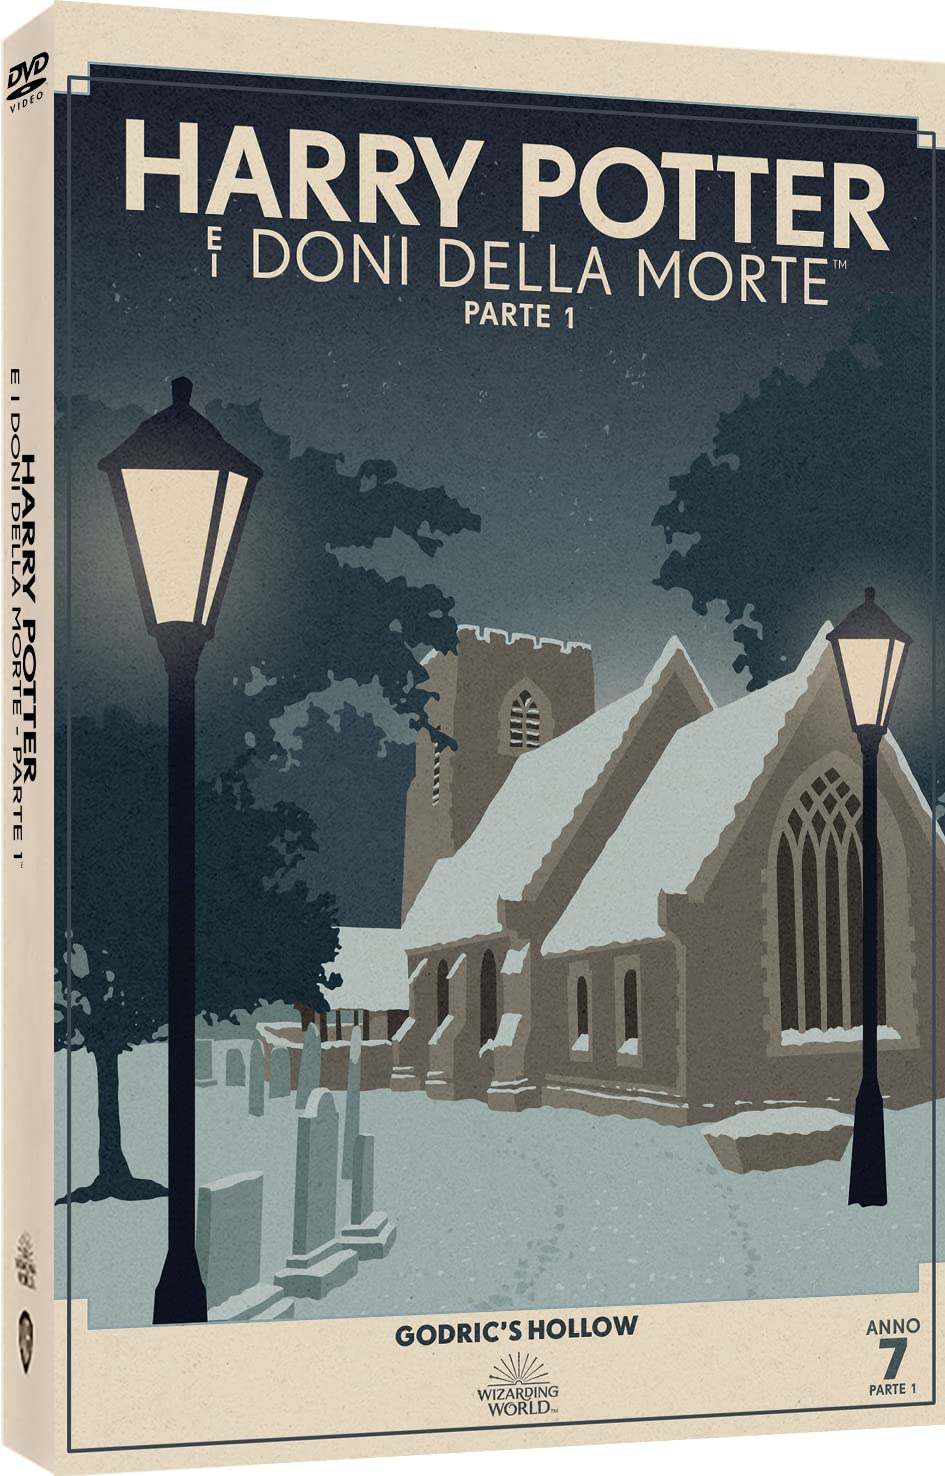 Harry Potter E I Doni Della Morte - Parte 1 (Travel Art) - DVD